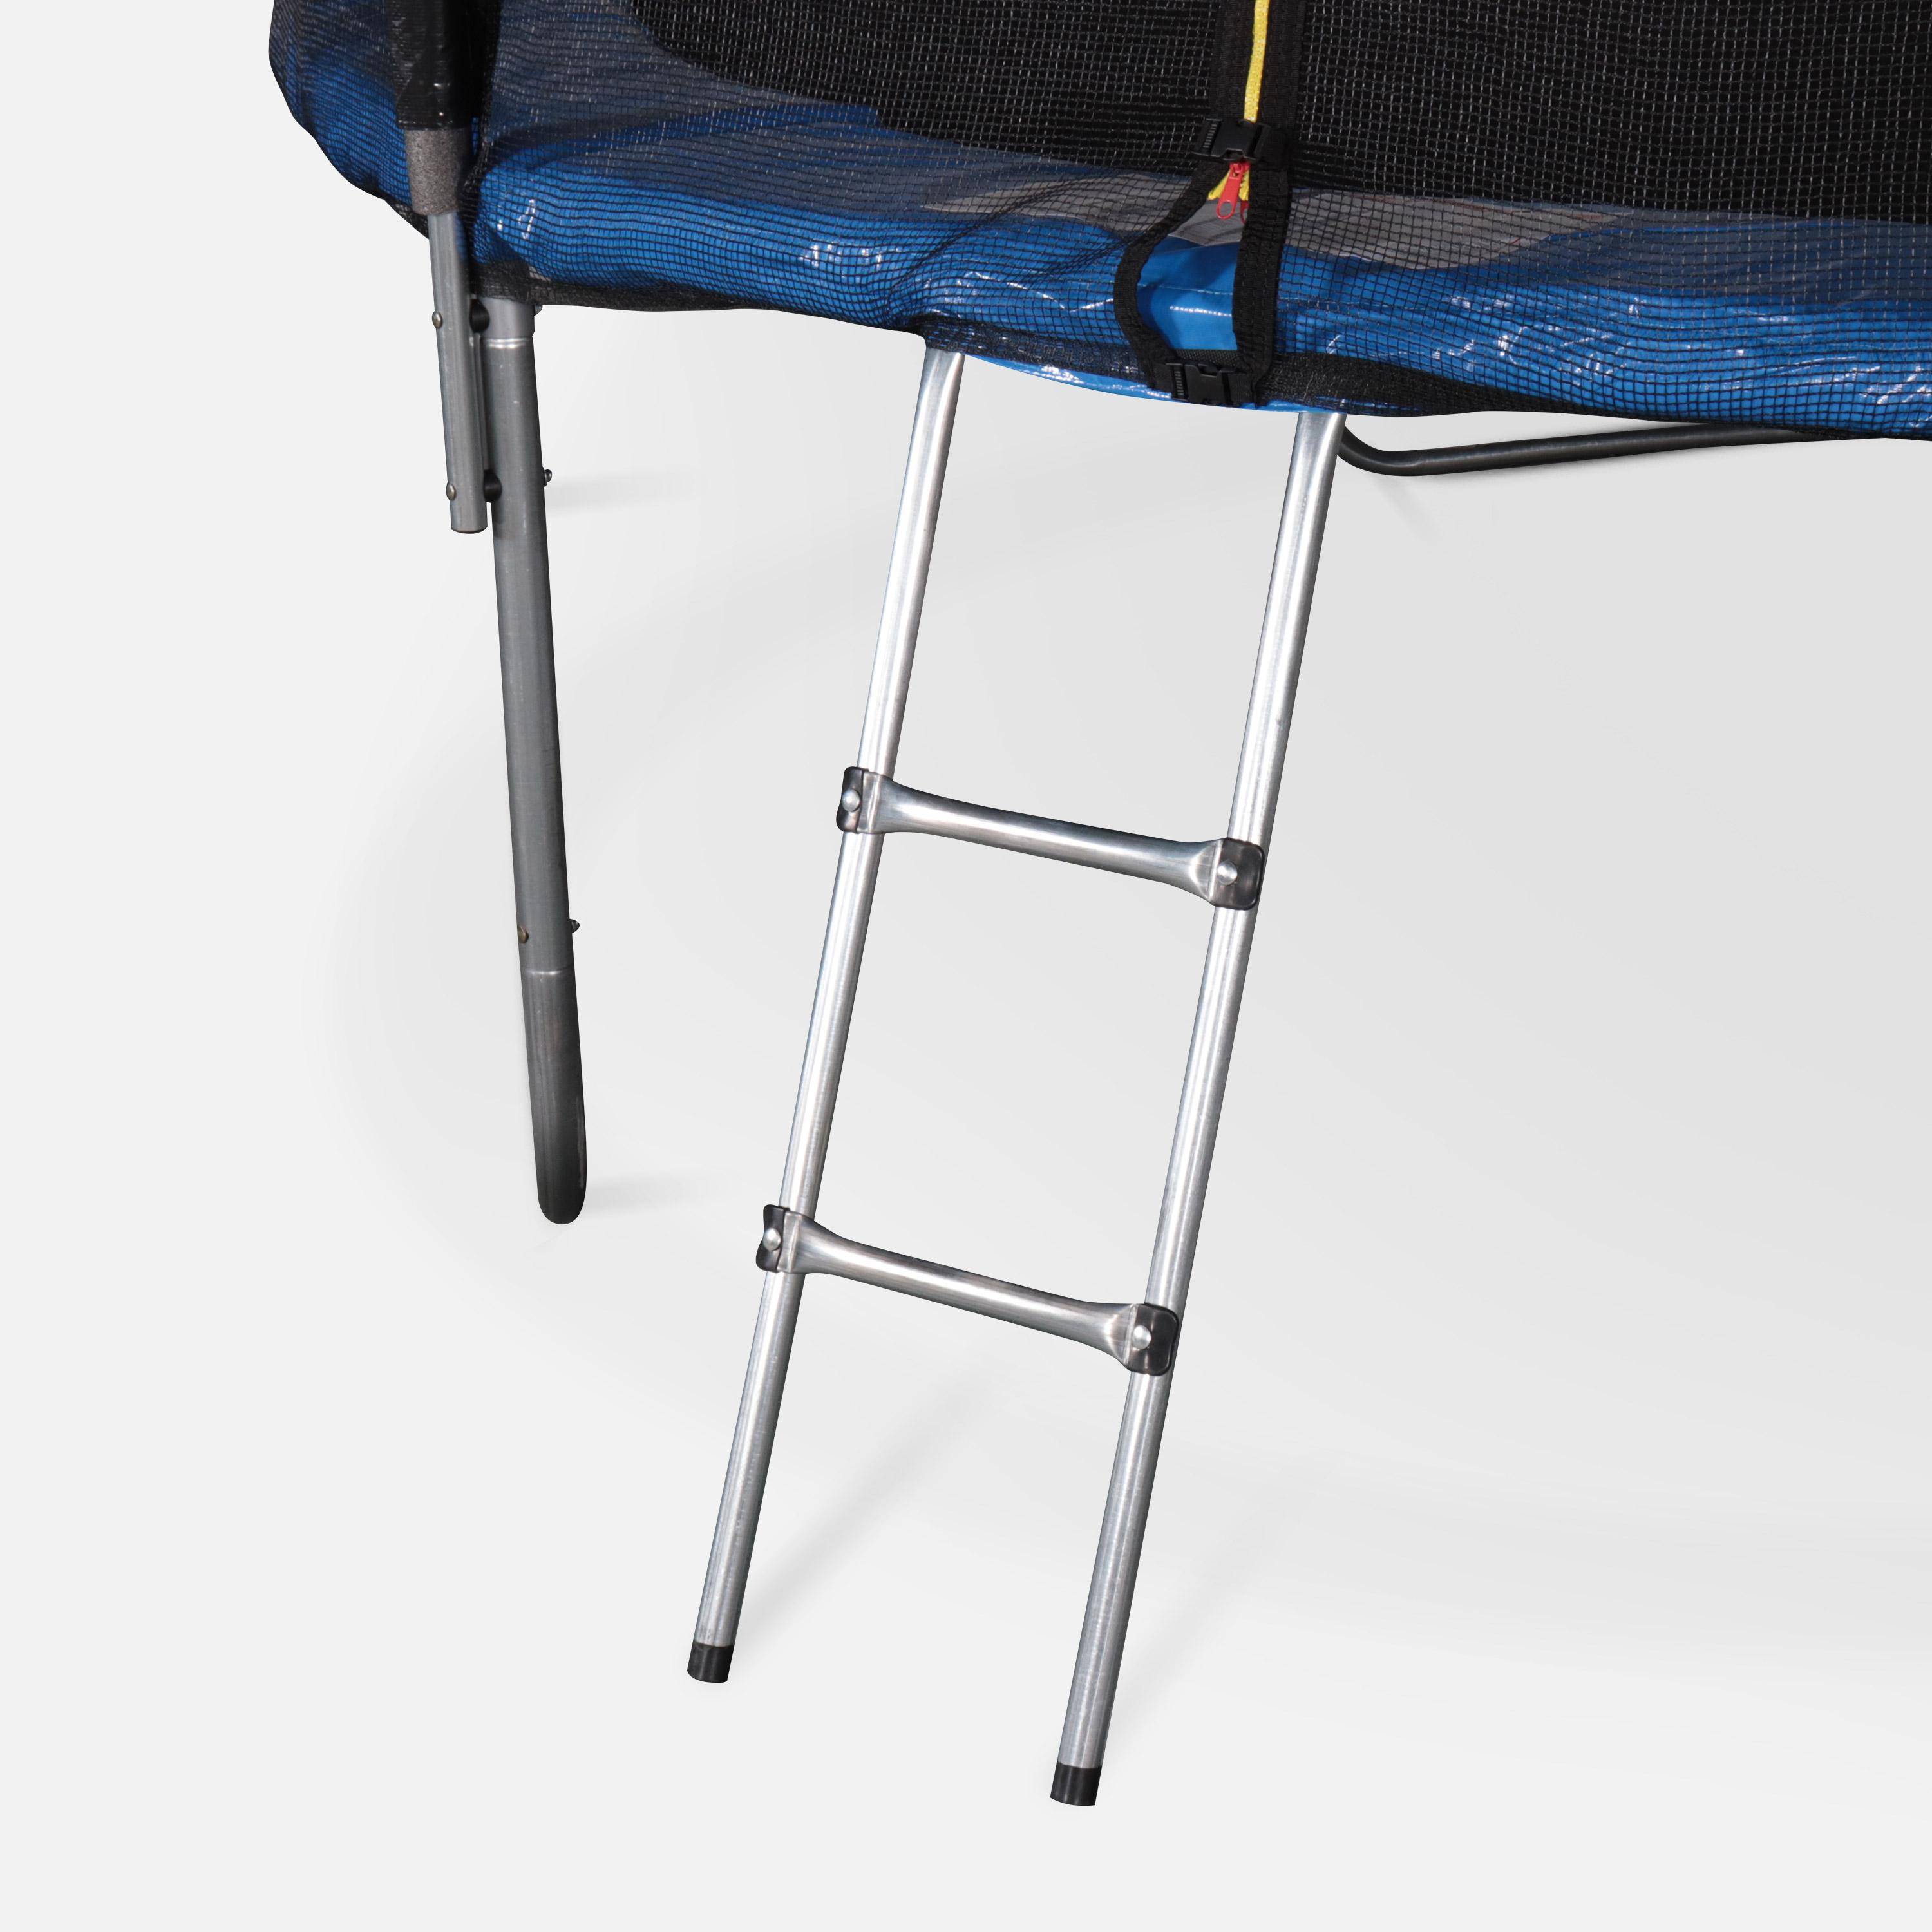 Trampolim de 305 cm,cama elastica suporta até 100 kg. Inclui: escada + cobertura de proteção + bolsa para sapatos + kit de fixação  - Mars XXL Photo6